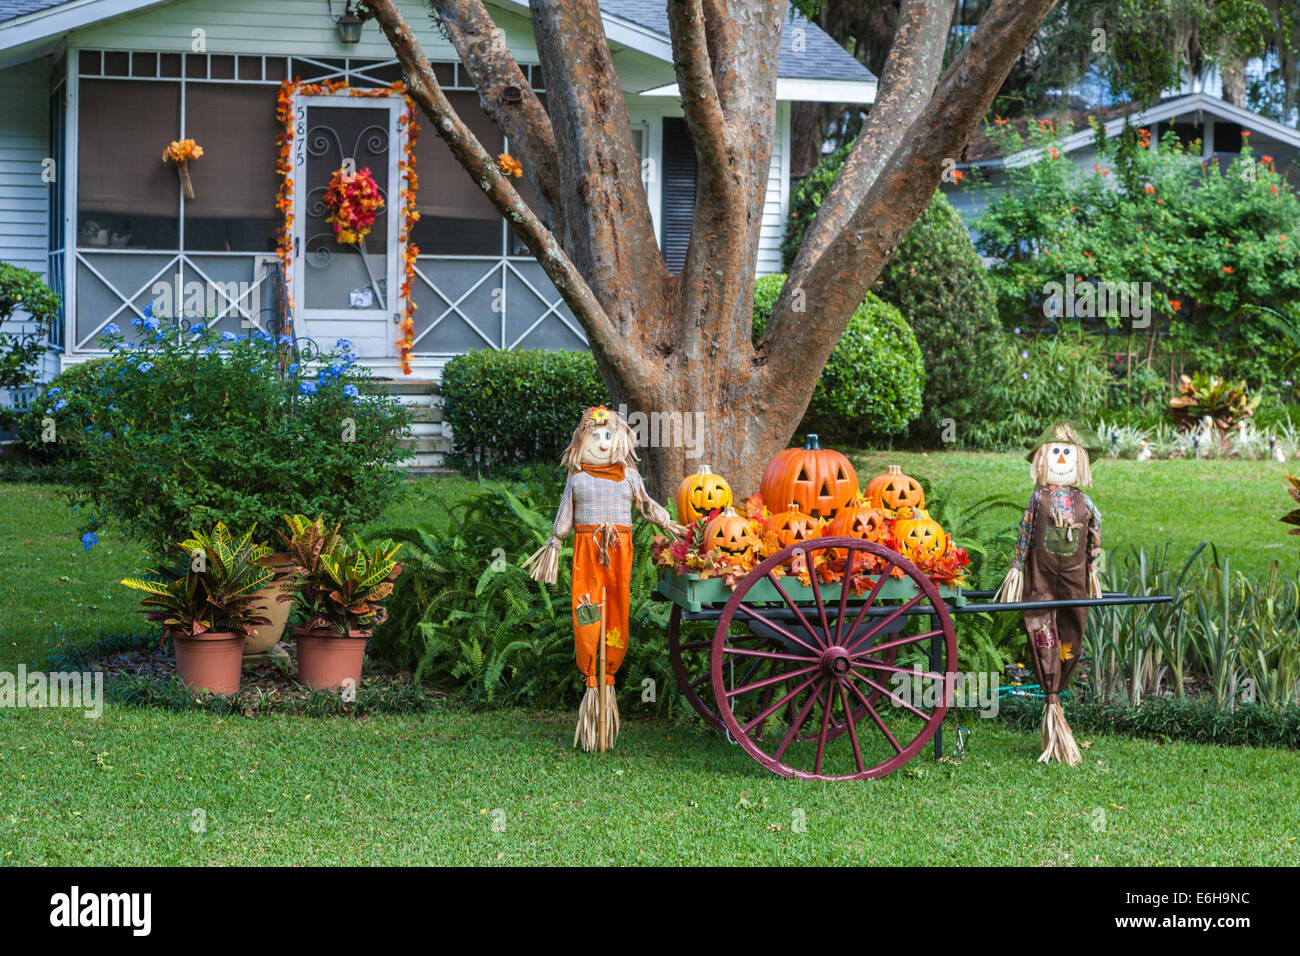 Affichage de la citrouille Halloween jack-o-lanternes et épouvantails sur la pelouse d'une maison Banque D'Images